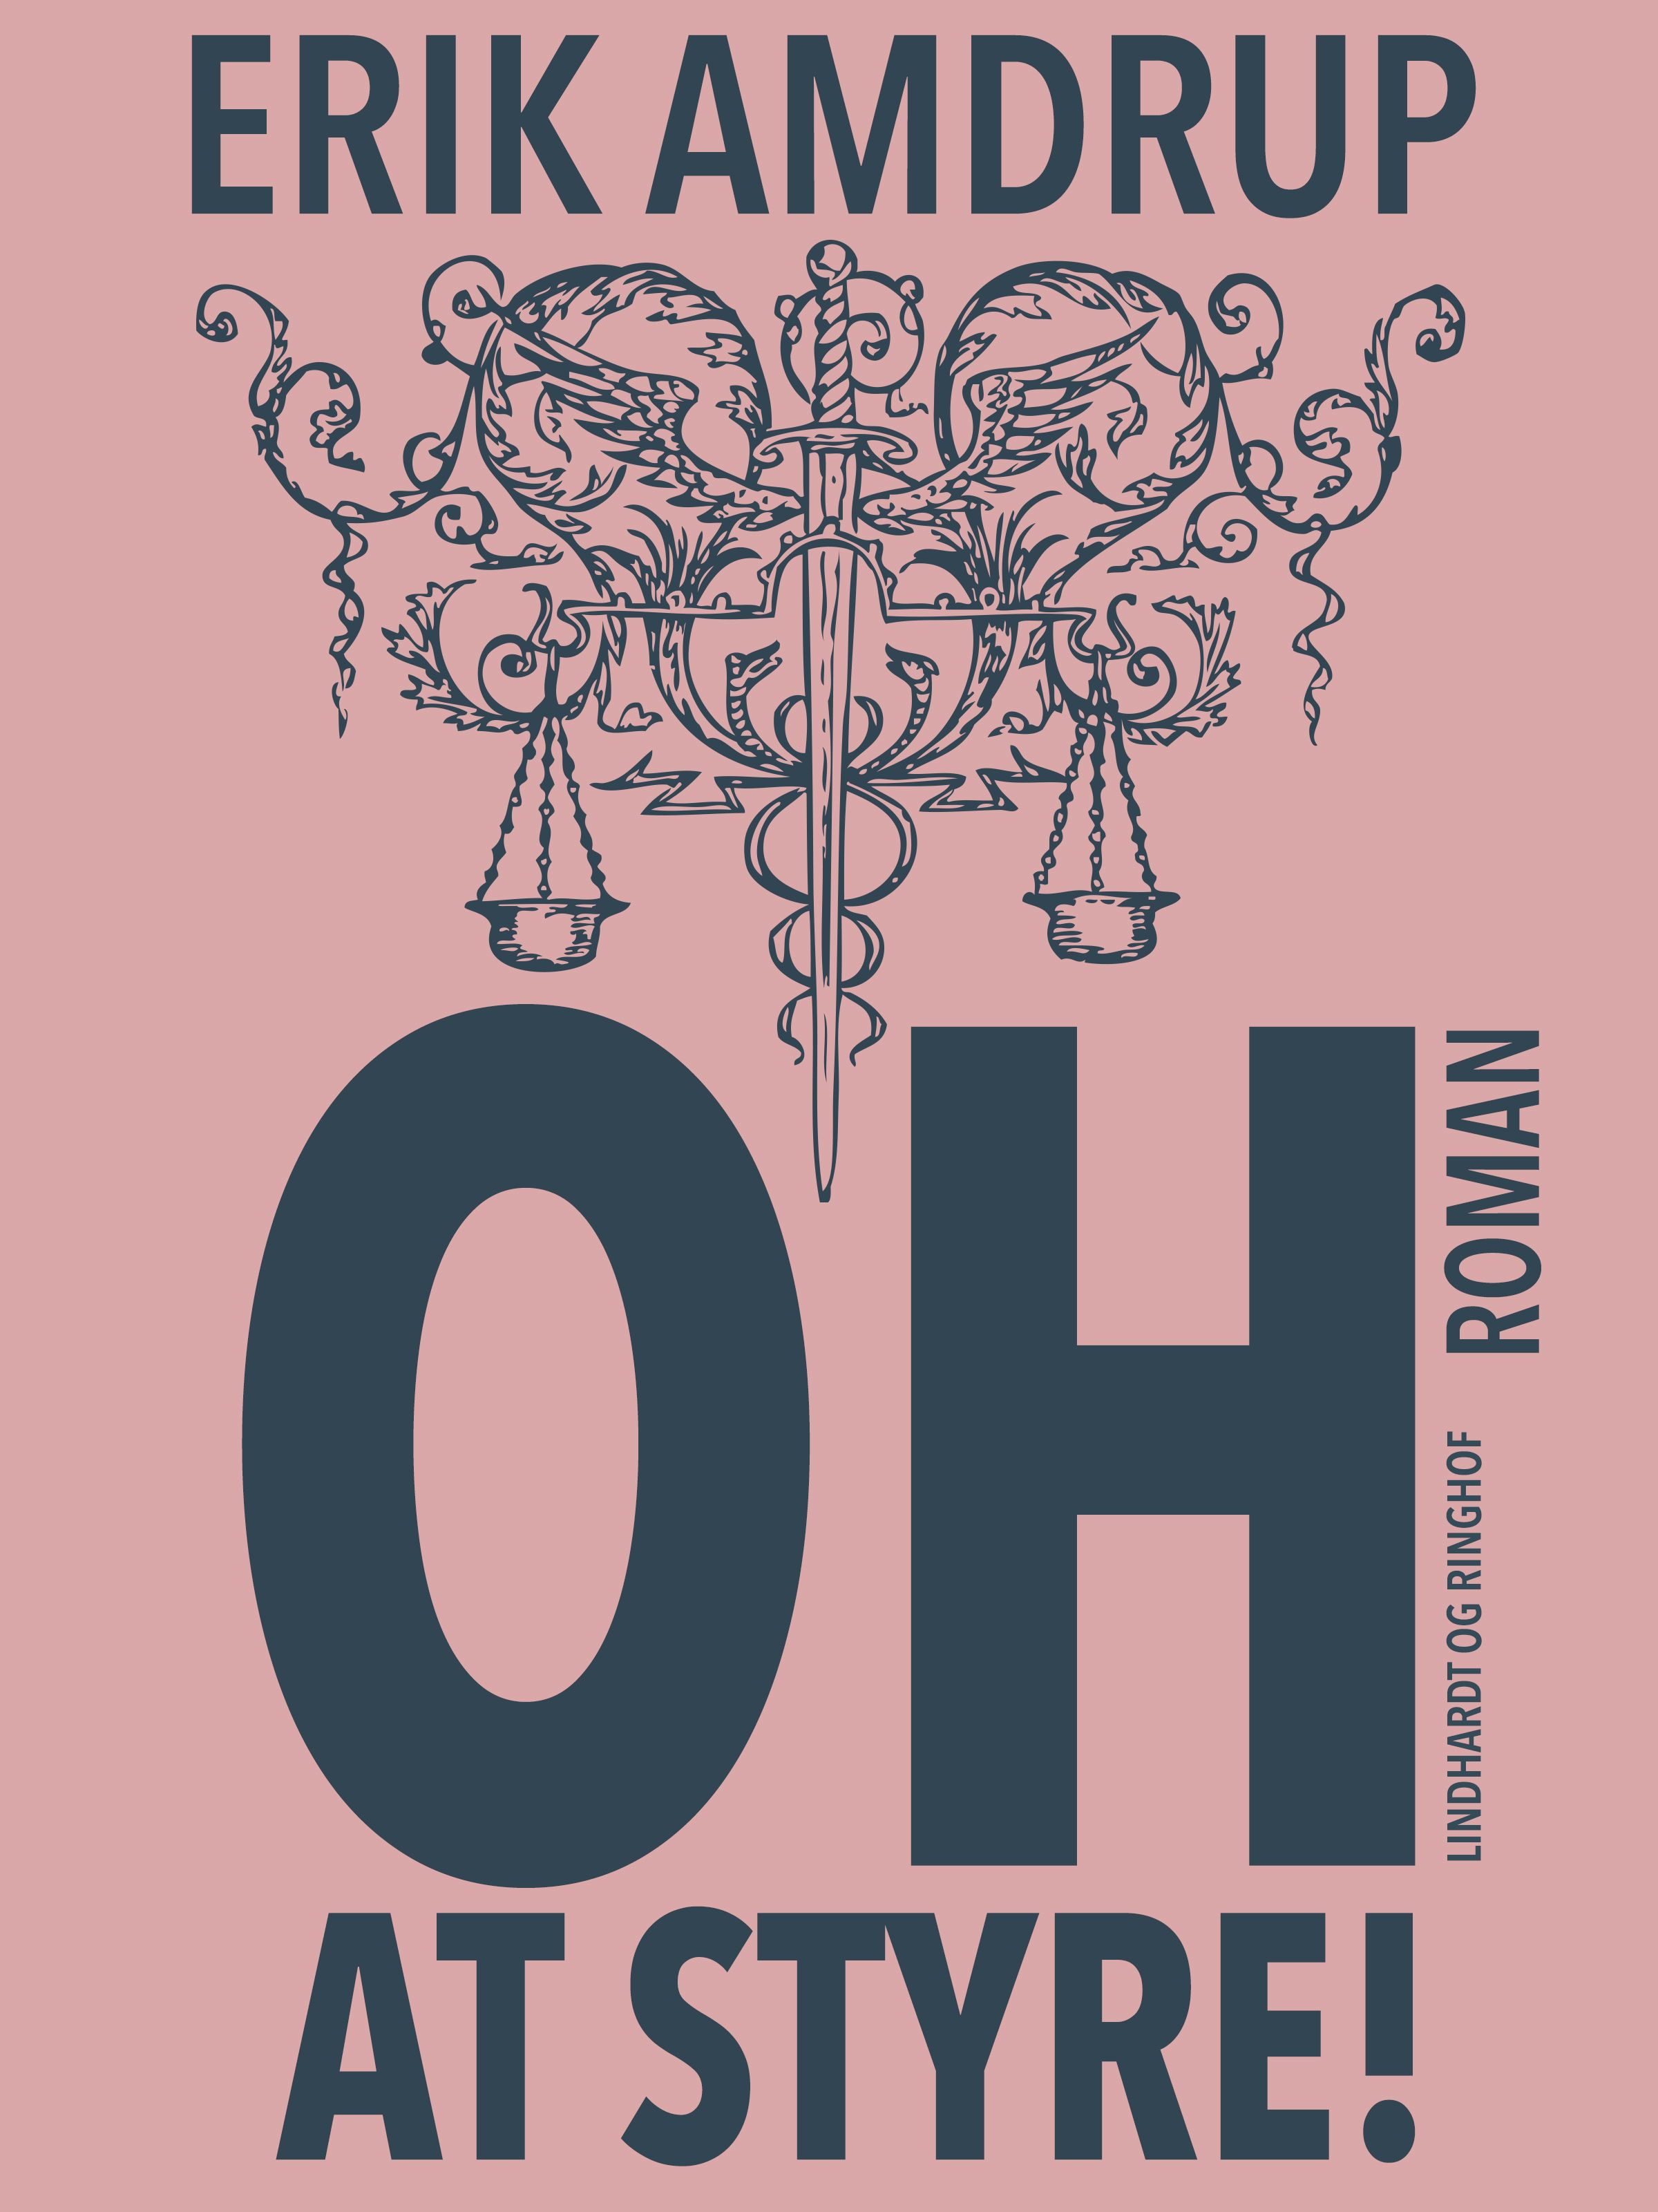 Oh – at styre!, e-bog af Erik Amdrup